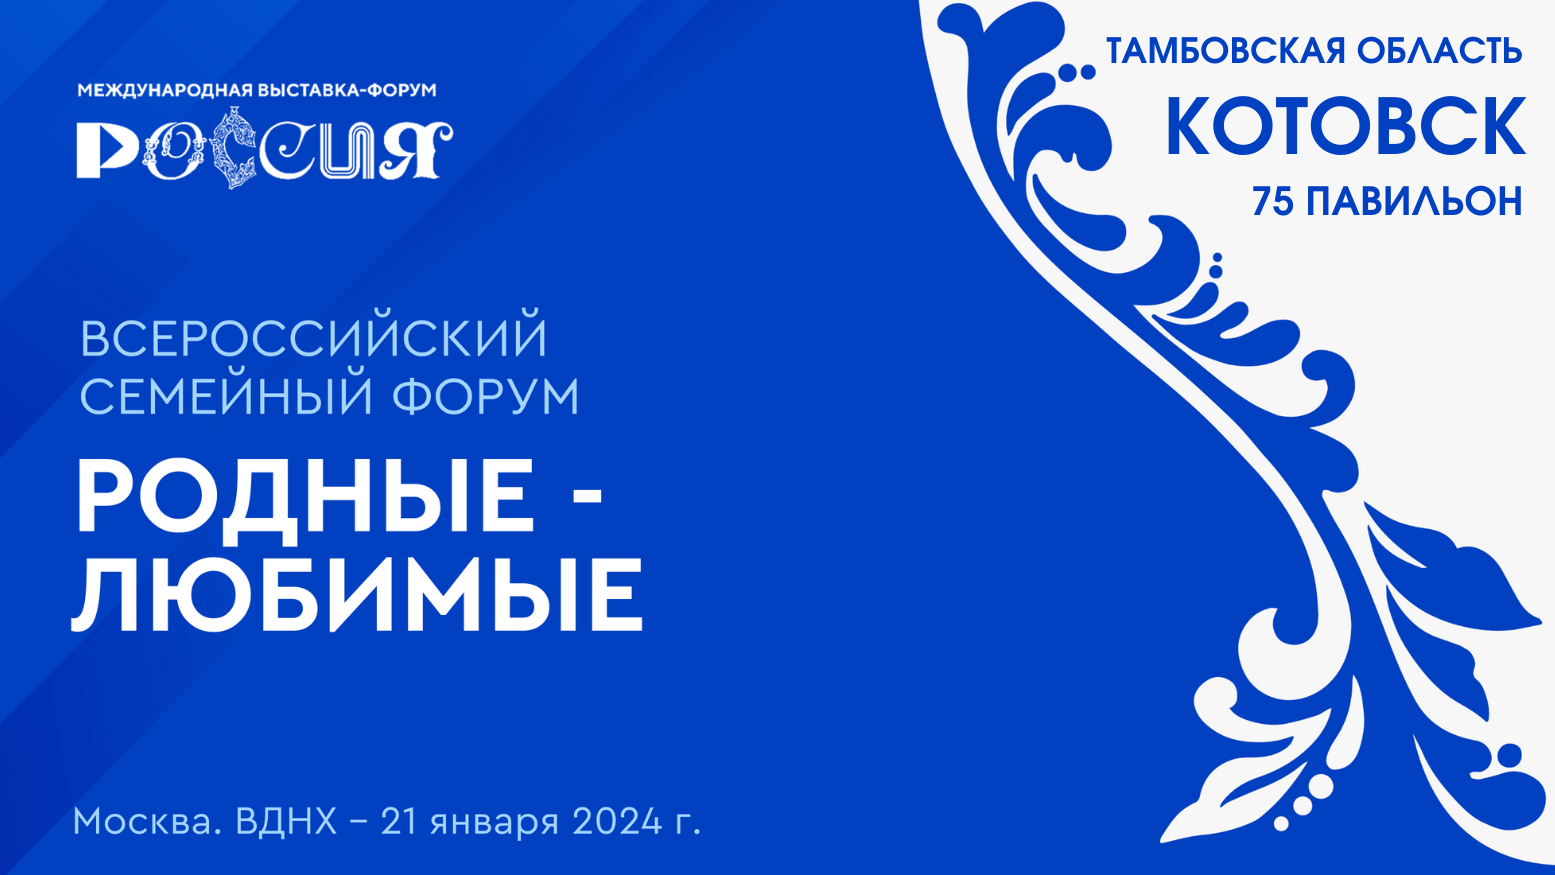 Презентация Котовска и его главного символа – неваляшки состоится в воскресенье, 21 января, на ВДНХ.